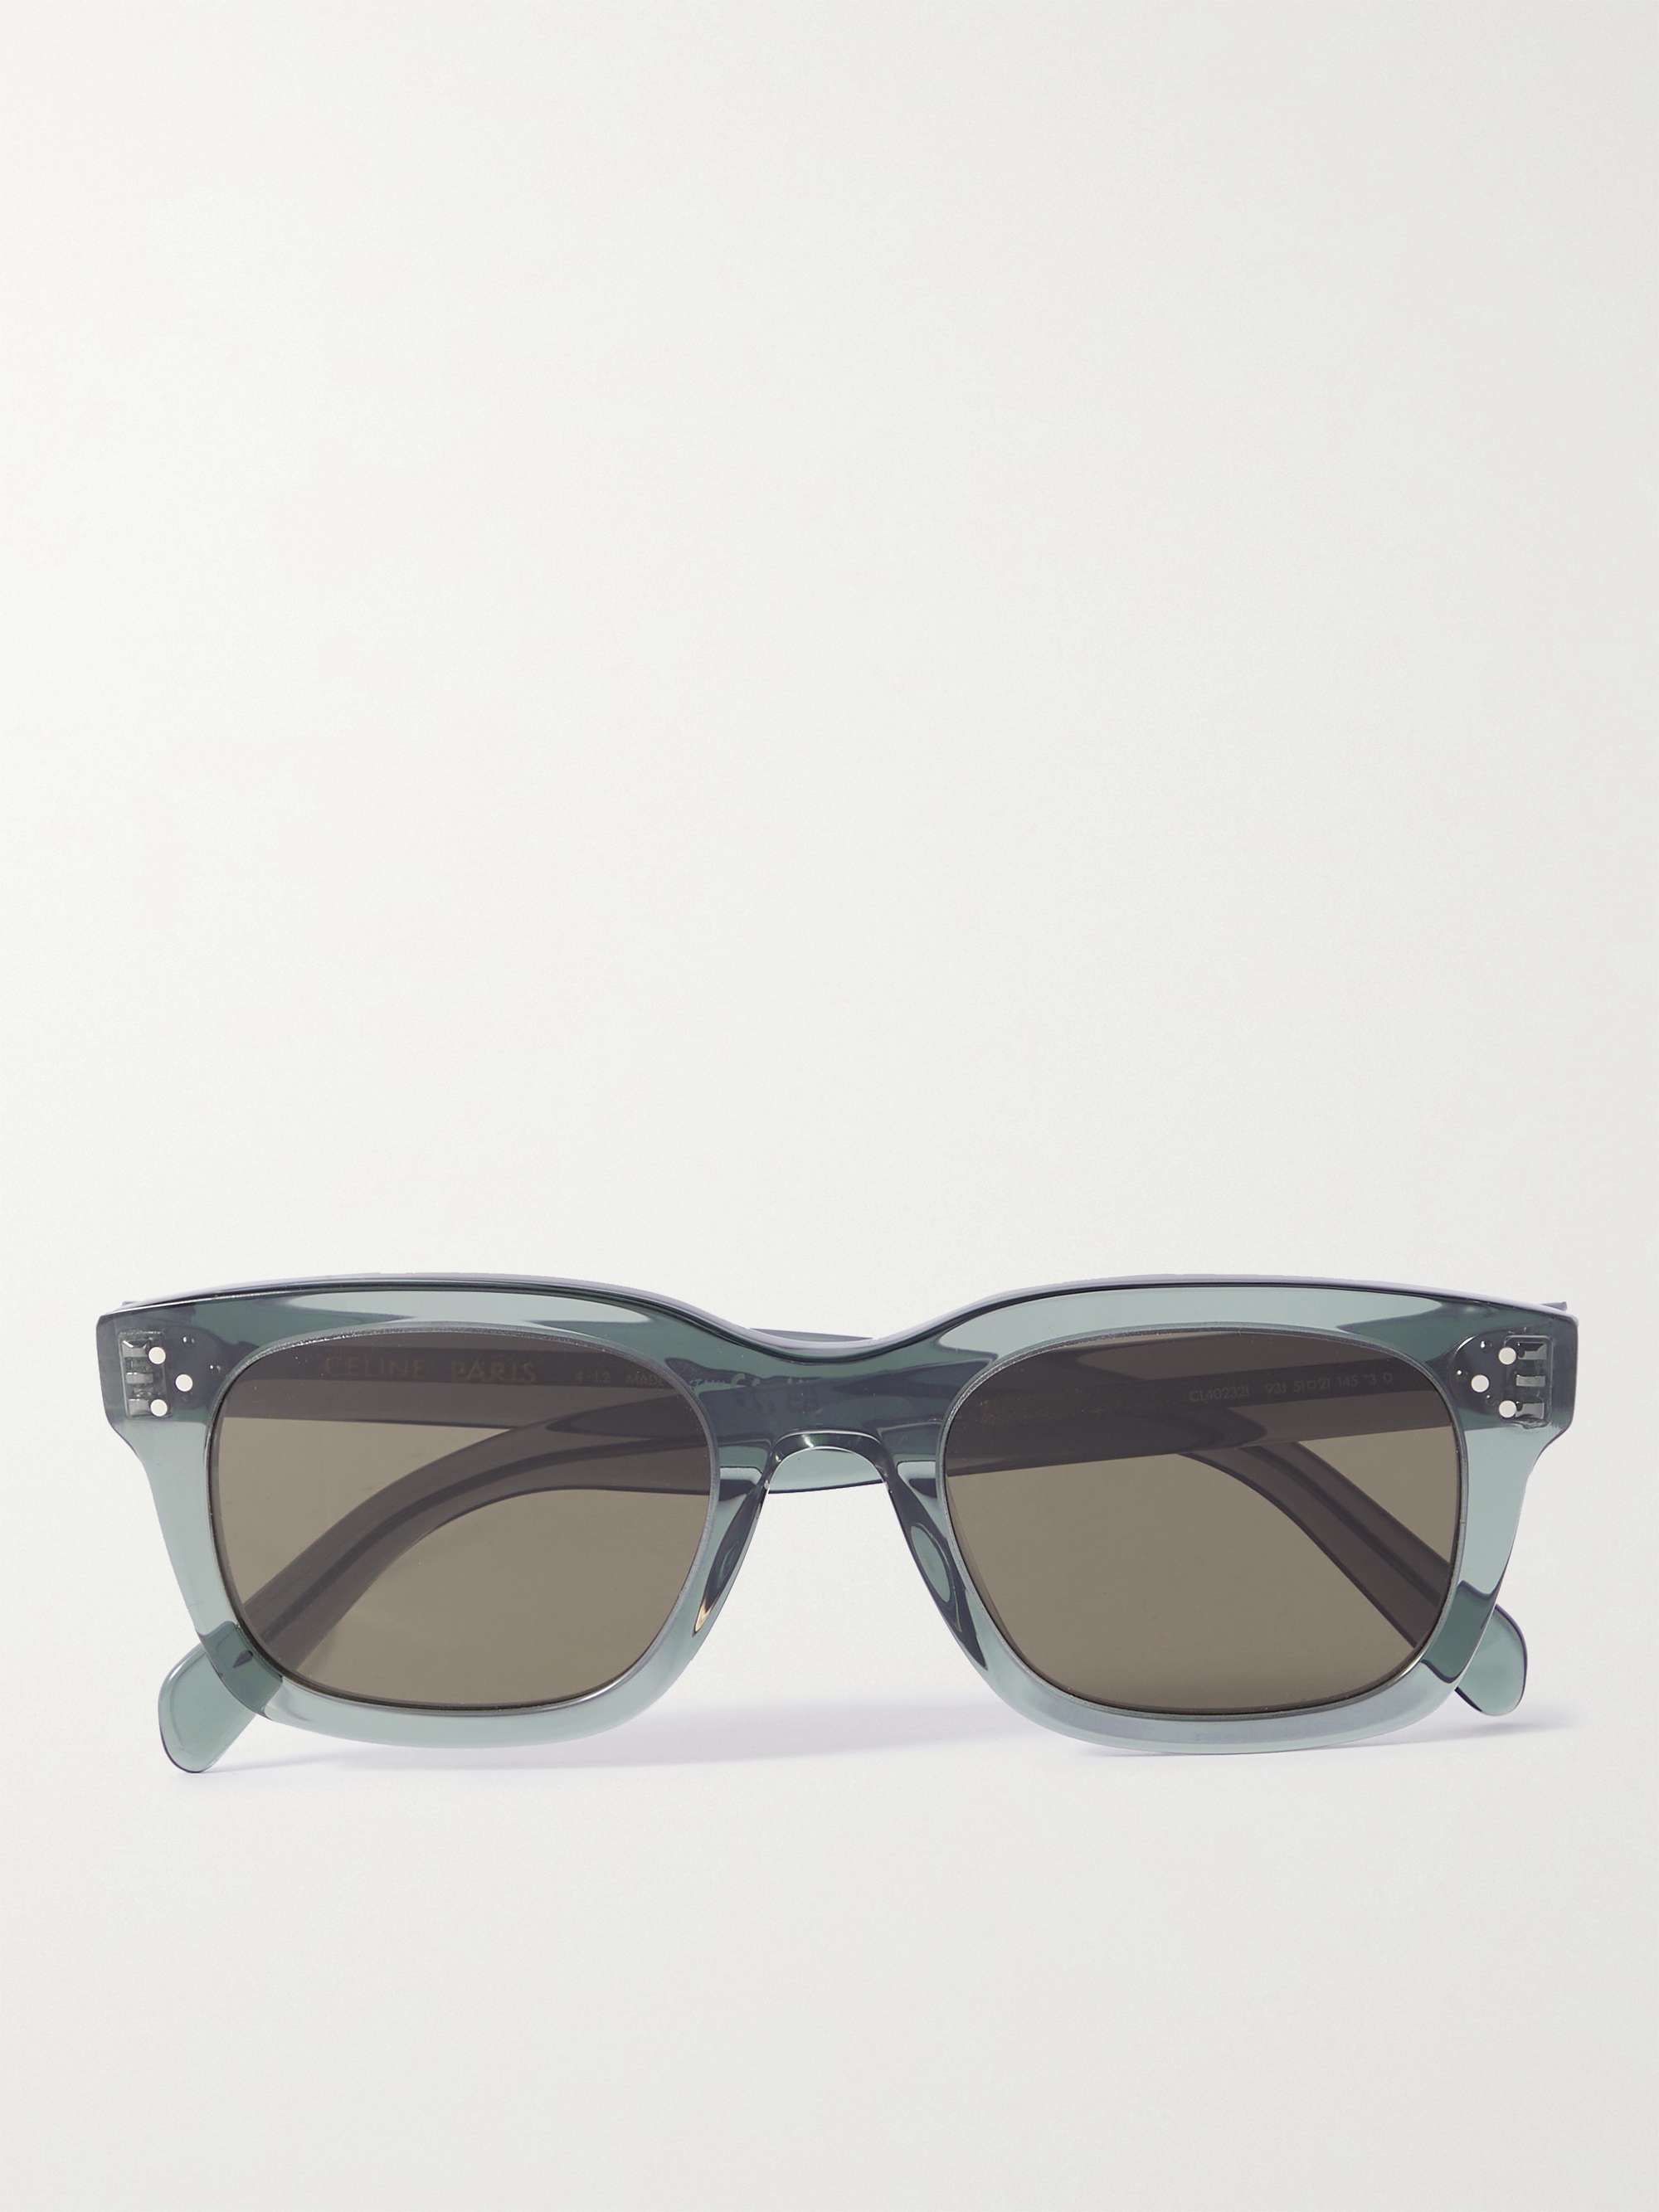 CELINE HOMME D-Frame Tortoiseshell Acetate Sunglasses